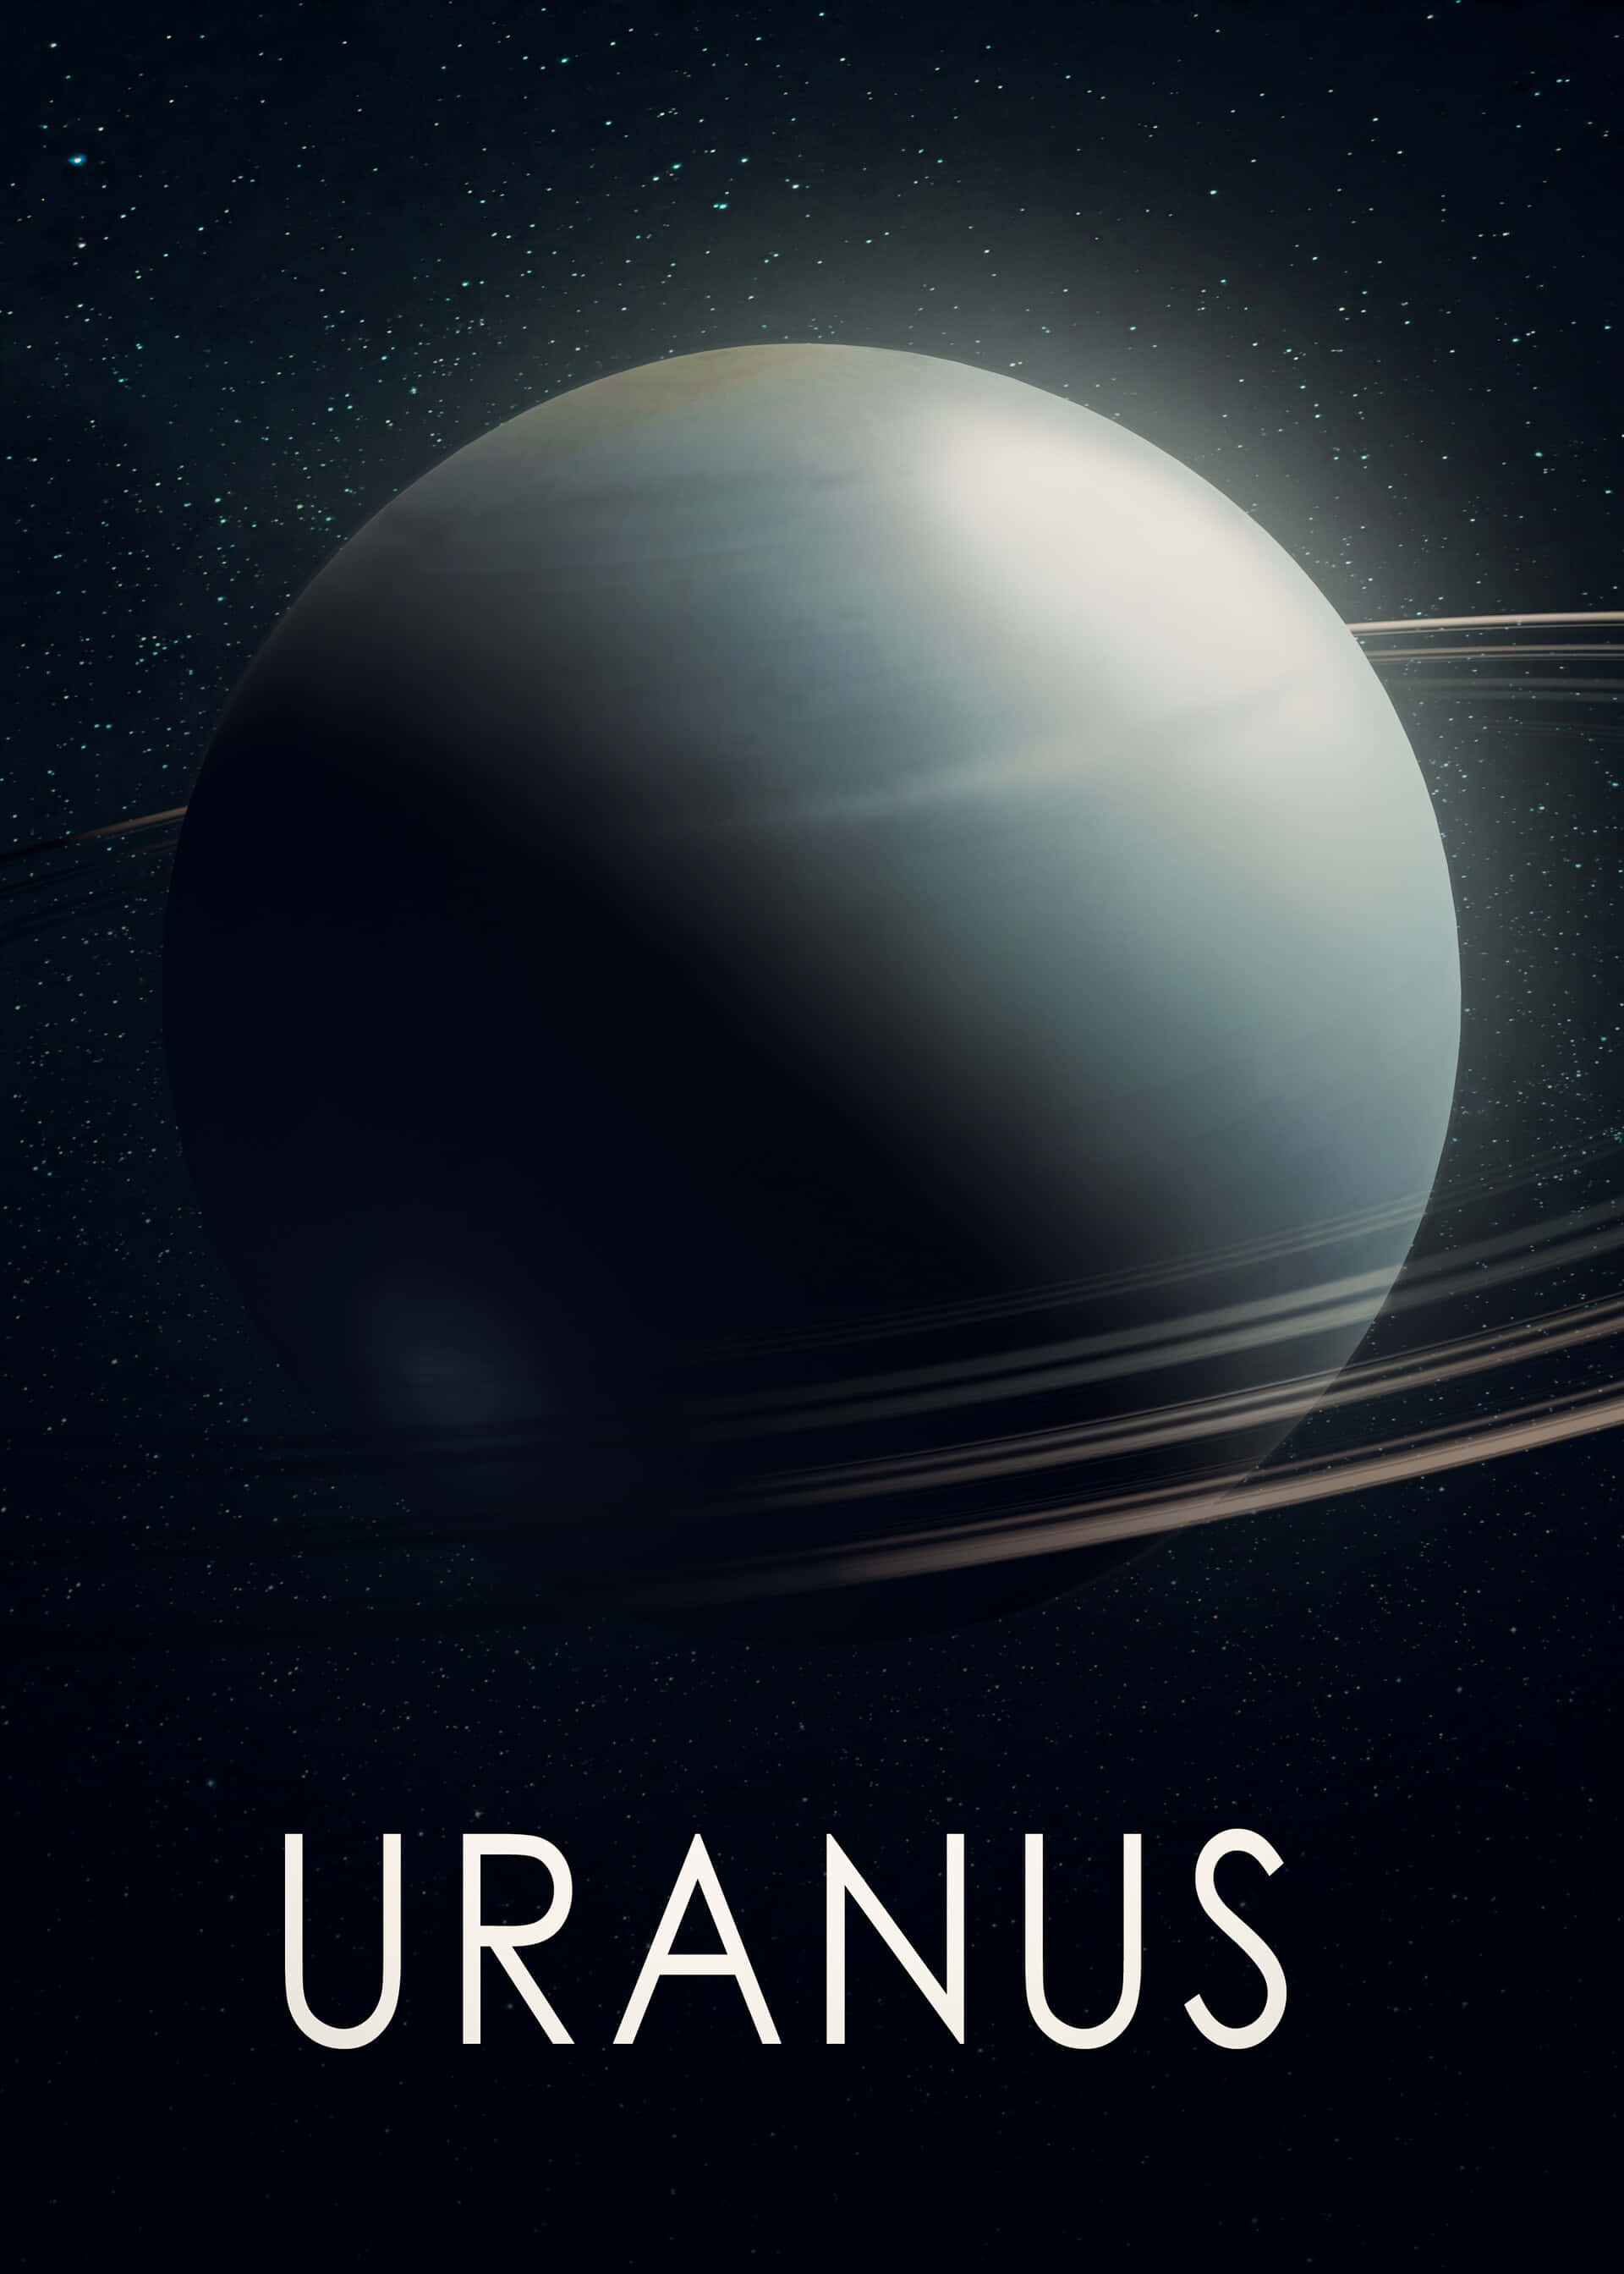 Get lost in the deep blues of Uranus